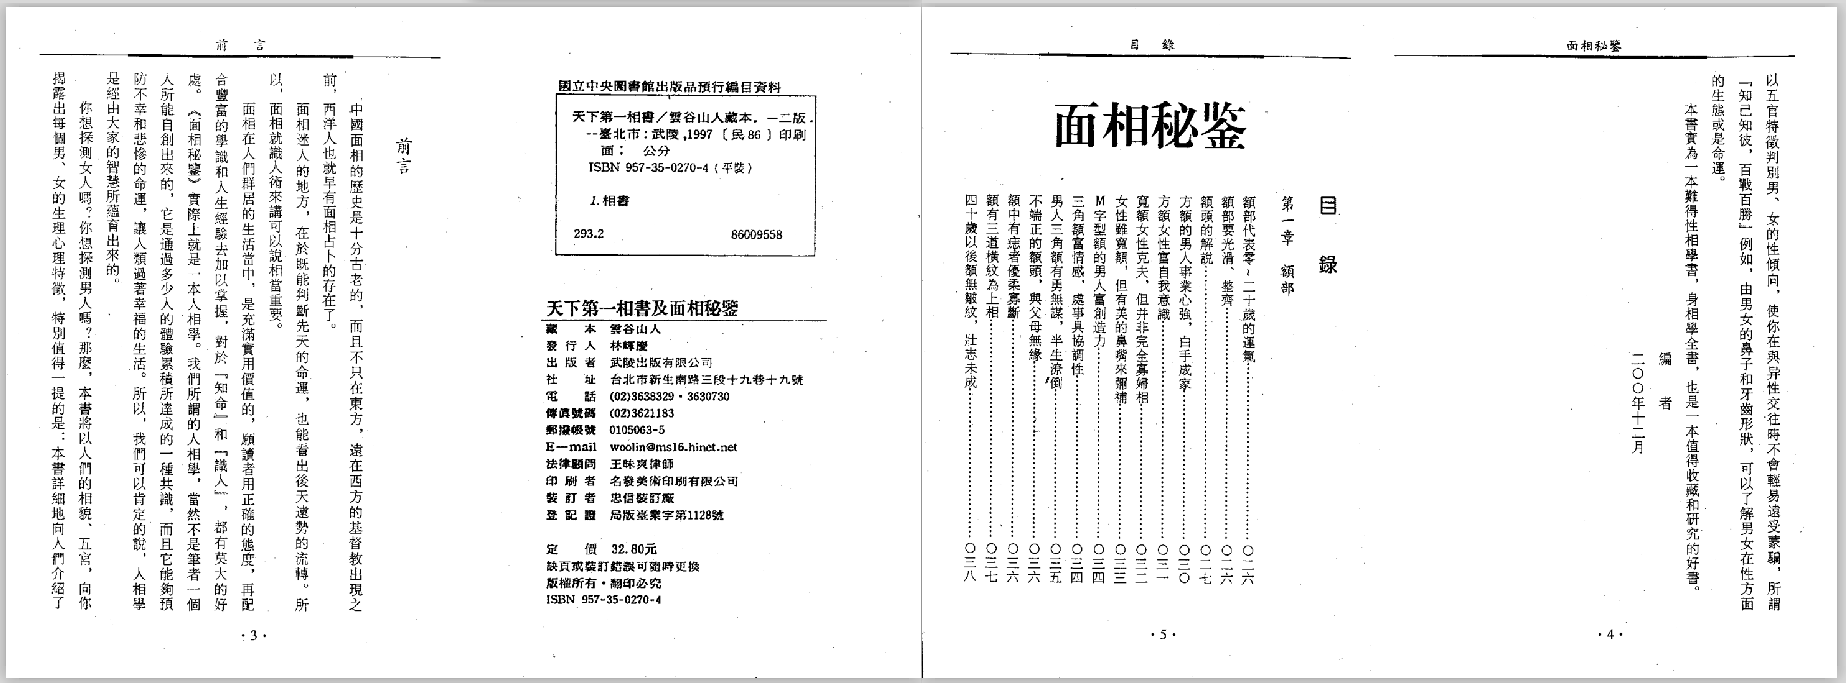 中国相术集大成《天下第一相书》PDF电子书资料12.5M